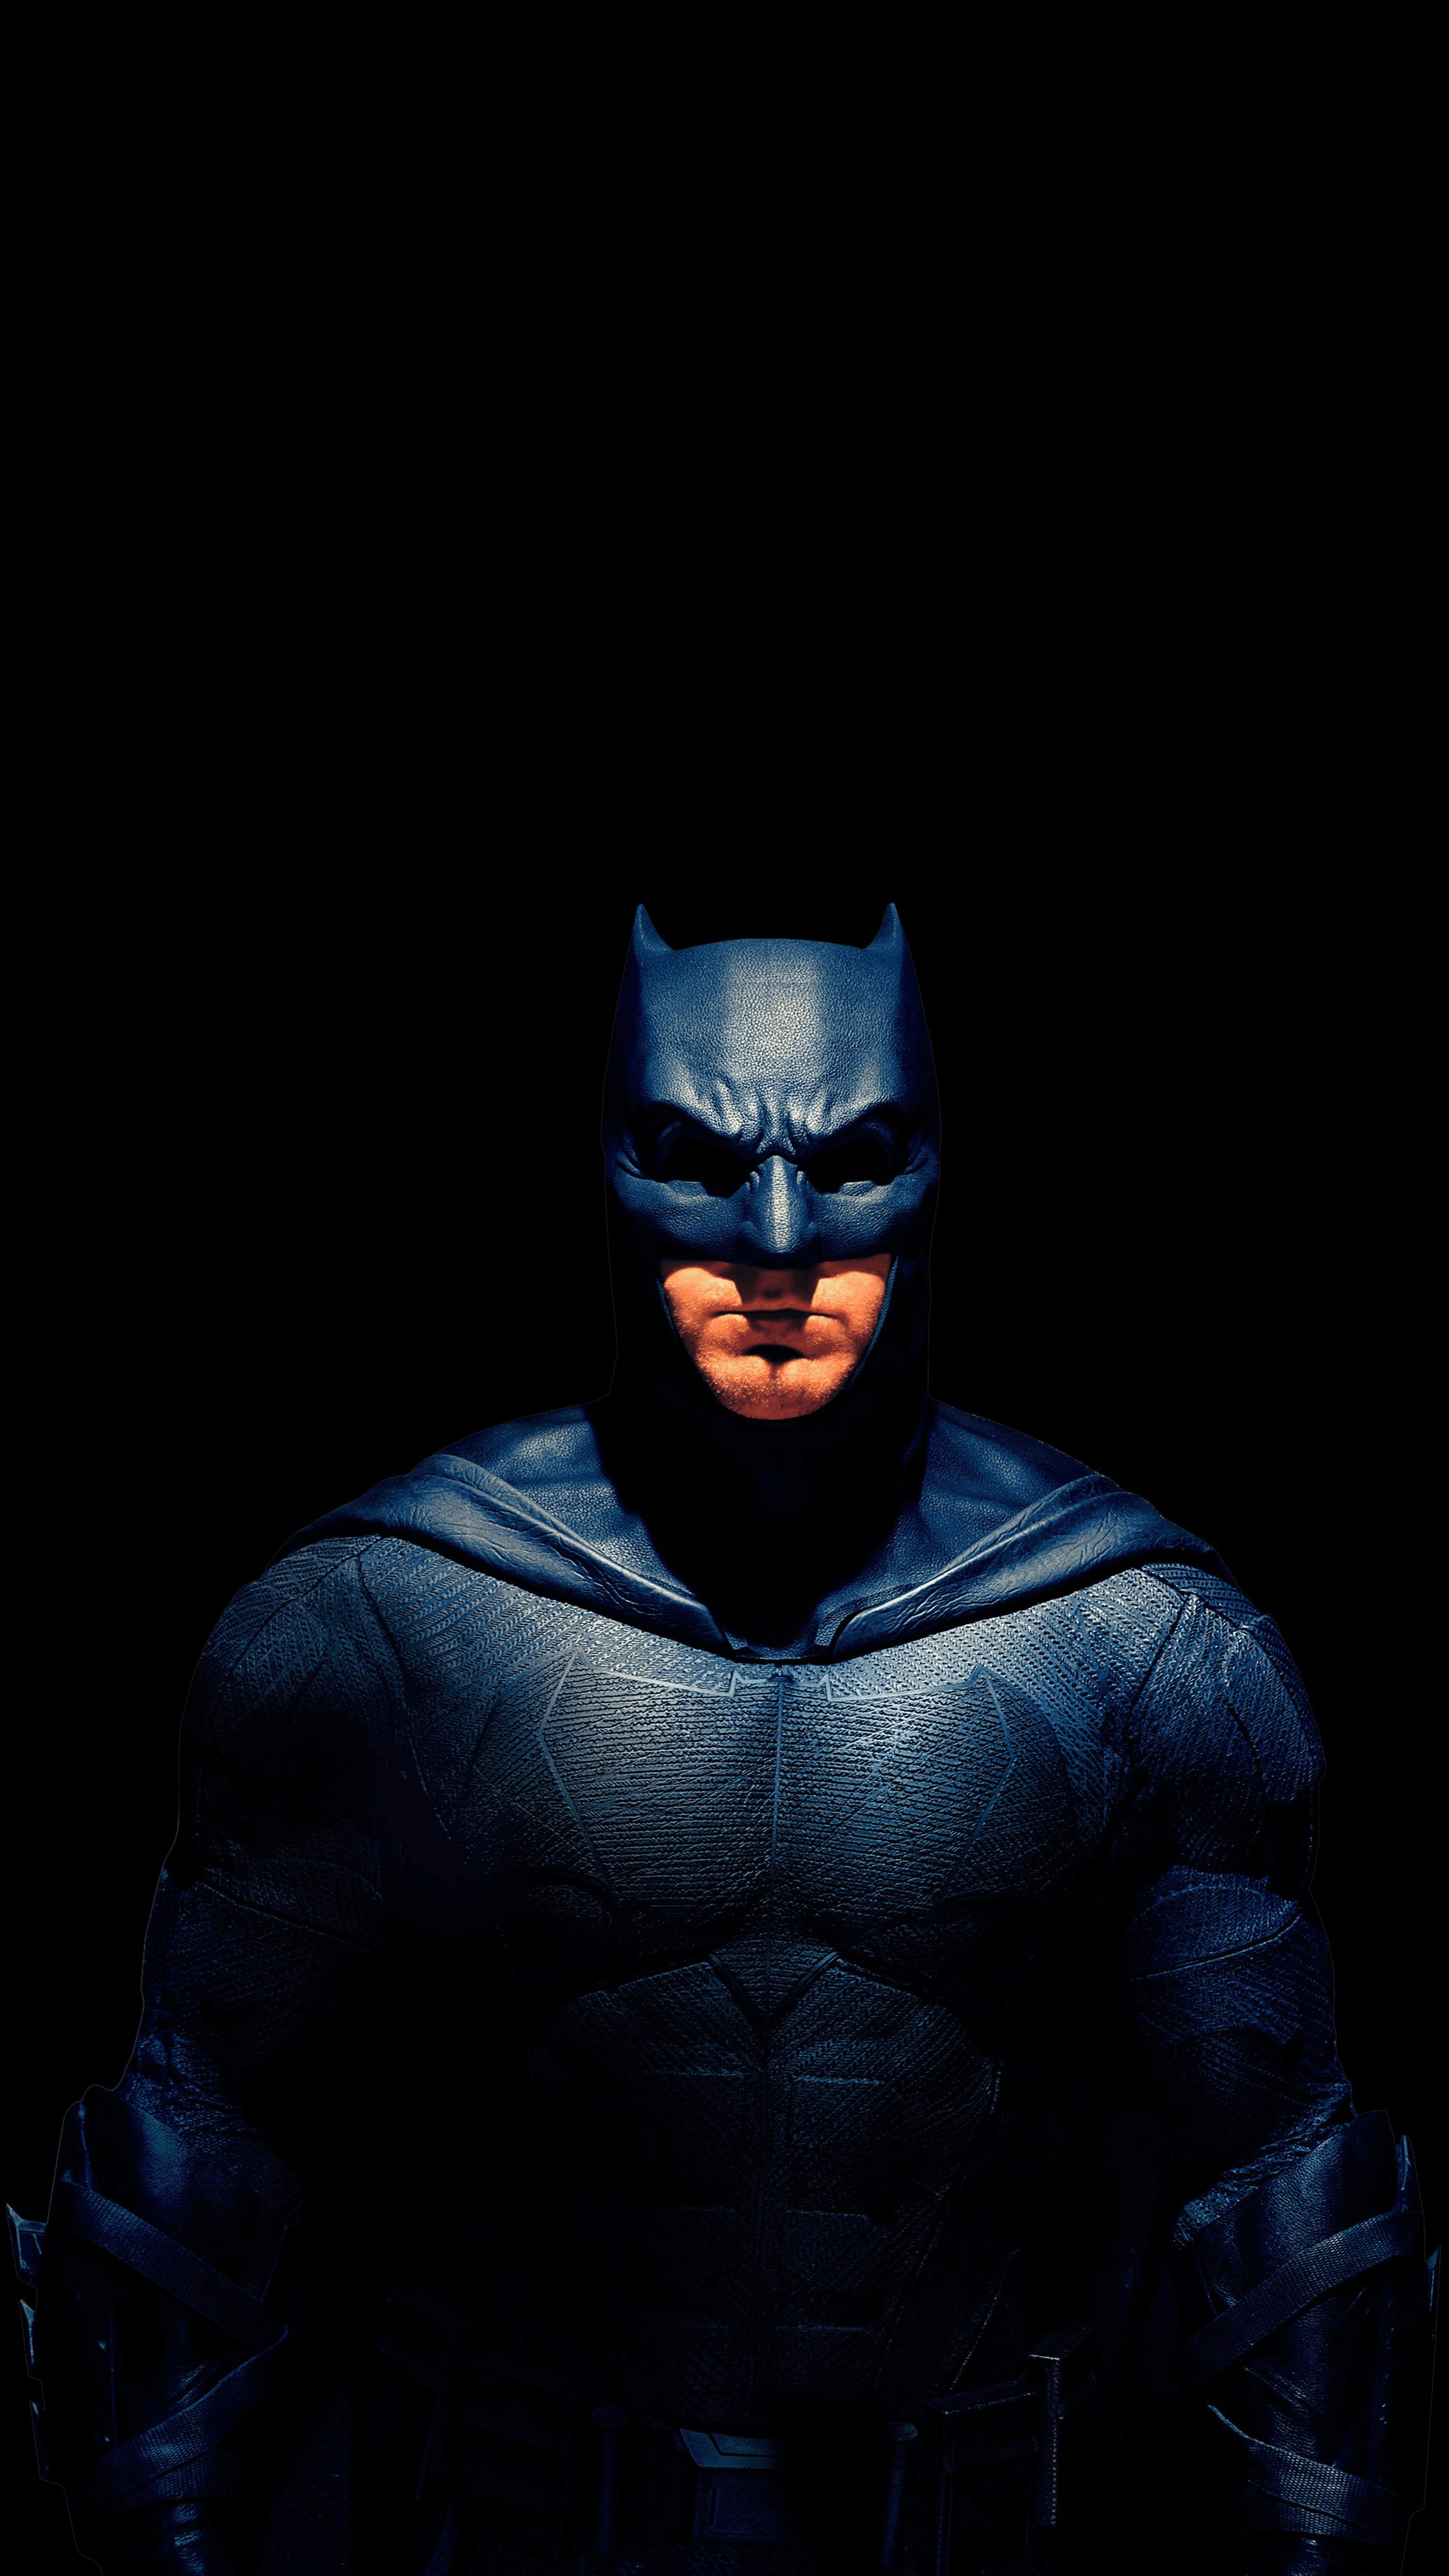 Đam mê siêu anh hùng Batman của bạn sẽ được thổi bay khi sở hữu ngay hình nền Batman cực chất lượng. Từ bóng đen cho đến chiếc áo choàng sọc nhỏ, bất cứ chi tiết nào trên hình ảnh này đều đúng với hình ảnh cổ điển của Batman. Hãy để chiếc máy tính của bạn trở nên đầy cá tính hơn với hình nền Batman độc đáo này.